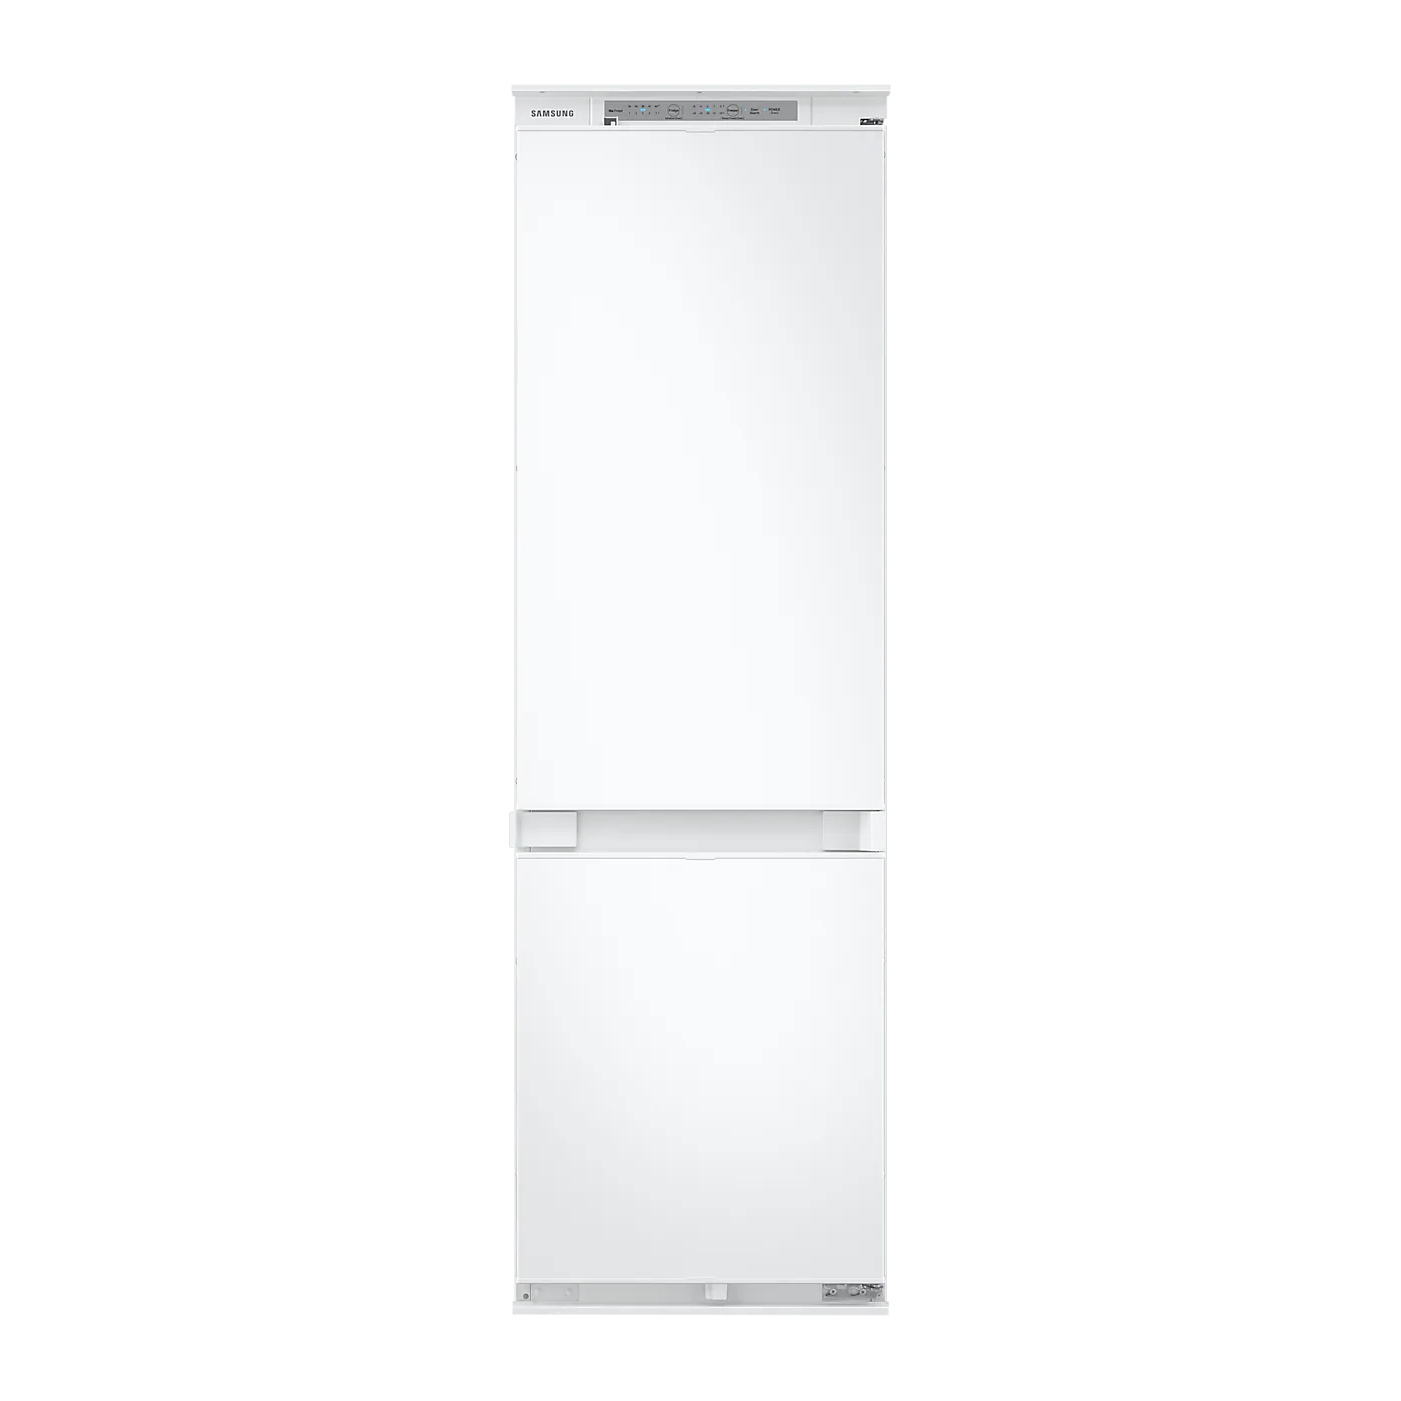 IKB3524-20 LIEBHERR Réfrigérateur combiné encastrable pas cher ✔️ Garantie  5 ans OFFERTE